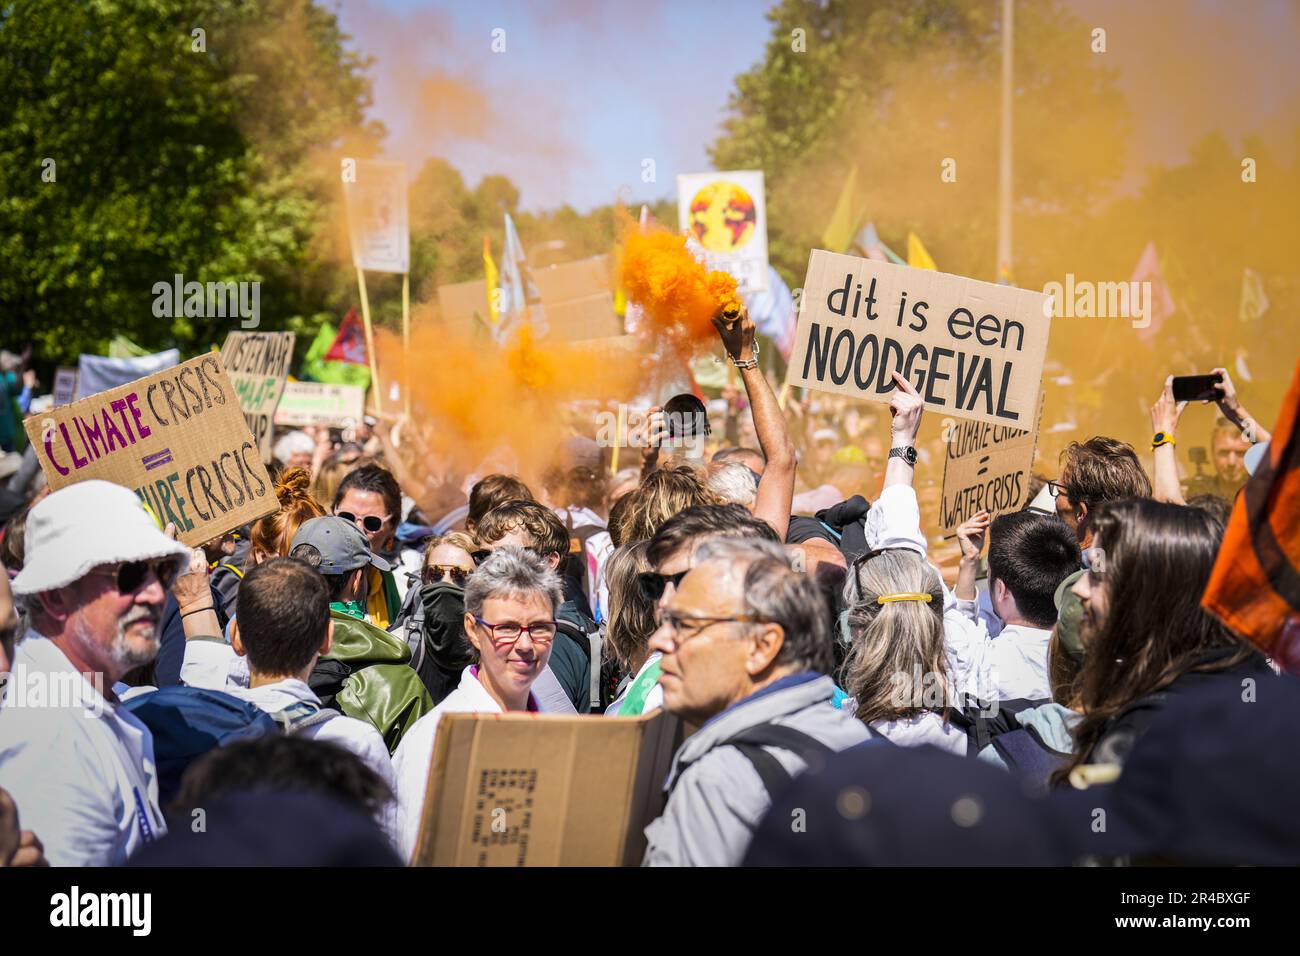 DEN HAAG - Rebellion-Aktivisten blockieren zum siebten Mal die A12 in Den Haag. Mit dieser Aktion lehnt XR Subventionen für fossile Brennstoffe ab. Während der jüngsten Blockade am 11. März wurden etwa 700 Aktivisten festgenommen. ANP PHIL NIJHUIS netherlands Out - belgien Out Credit: ANP/Alamy Live News Stockfoto